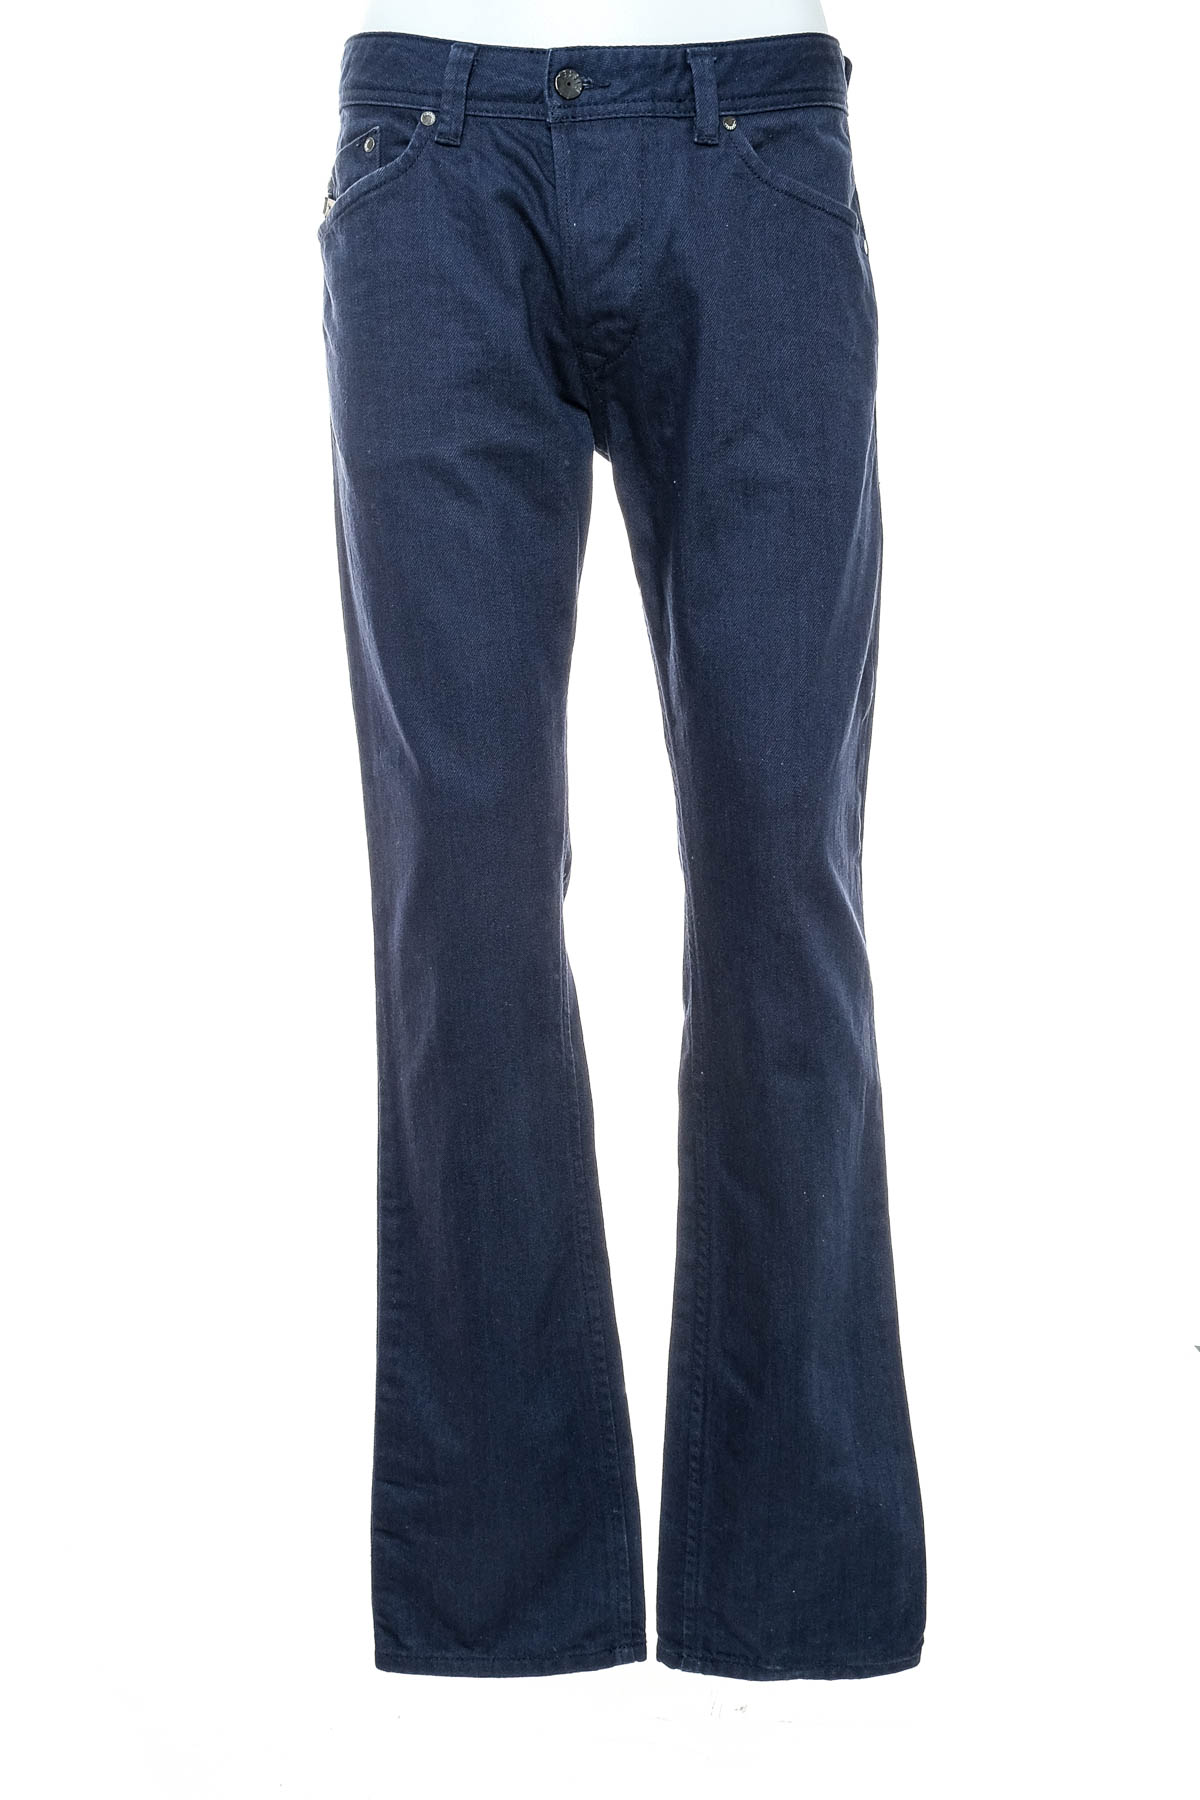 Men's jeans - DIESEL - 0